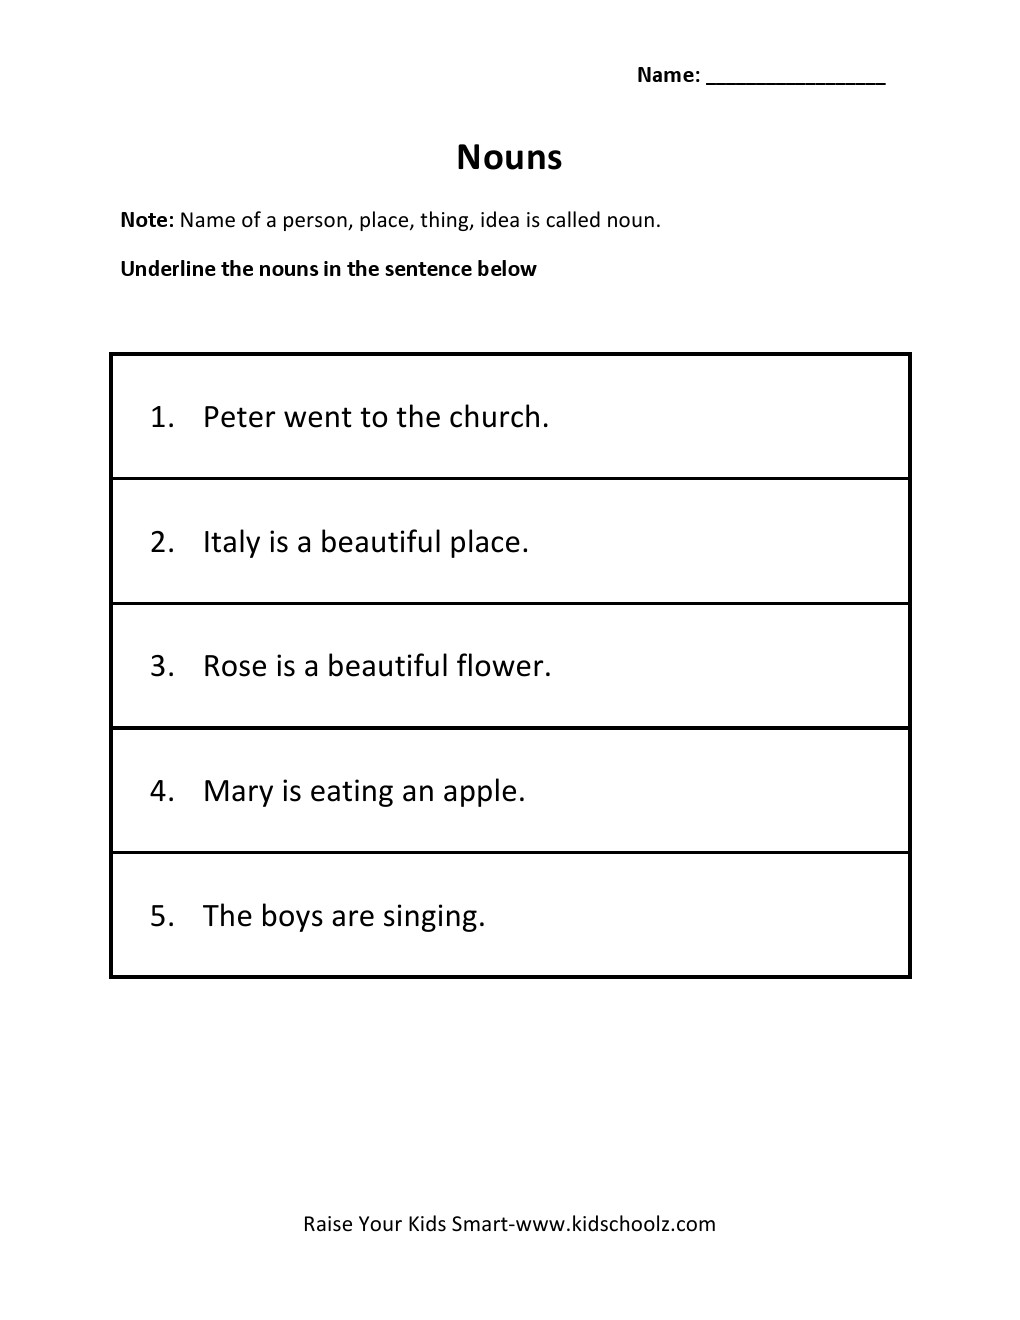 underline-nouns-worksheet-for-grade-1-falling-into-first-grammar-worksheets-samples